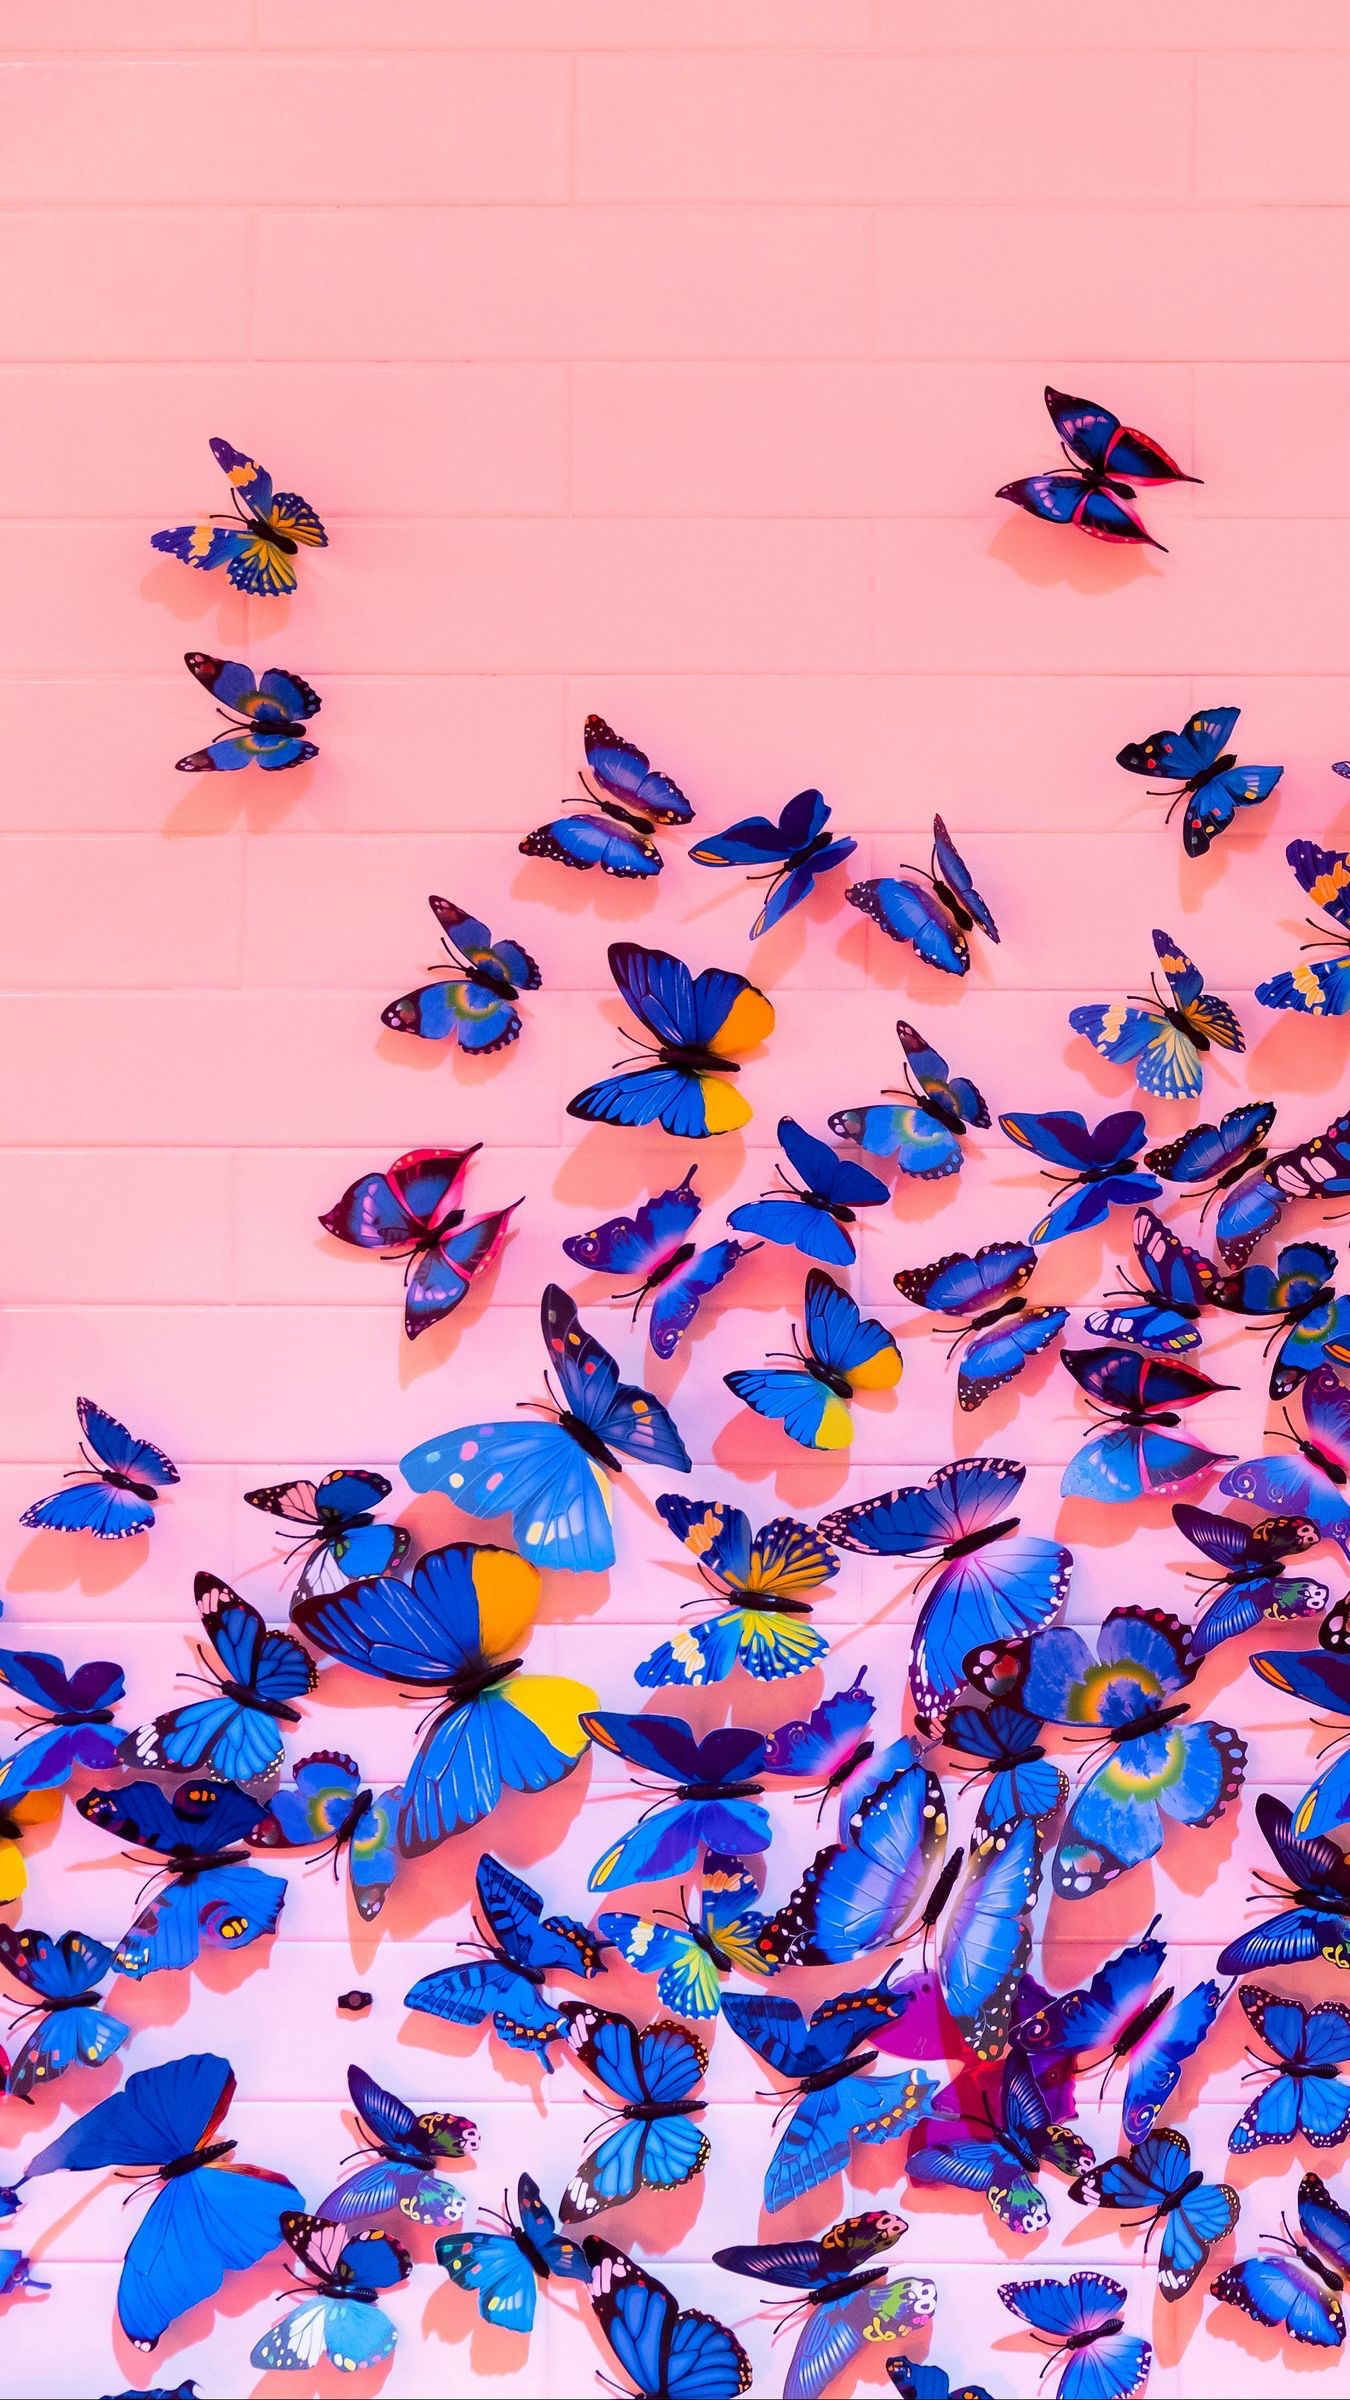 rosa fondo de pantalla para iphone,azul,mariposa,azul cobalto,púrpura,polillas y mariposas